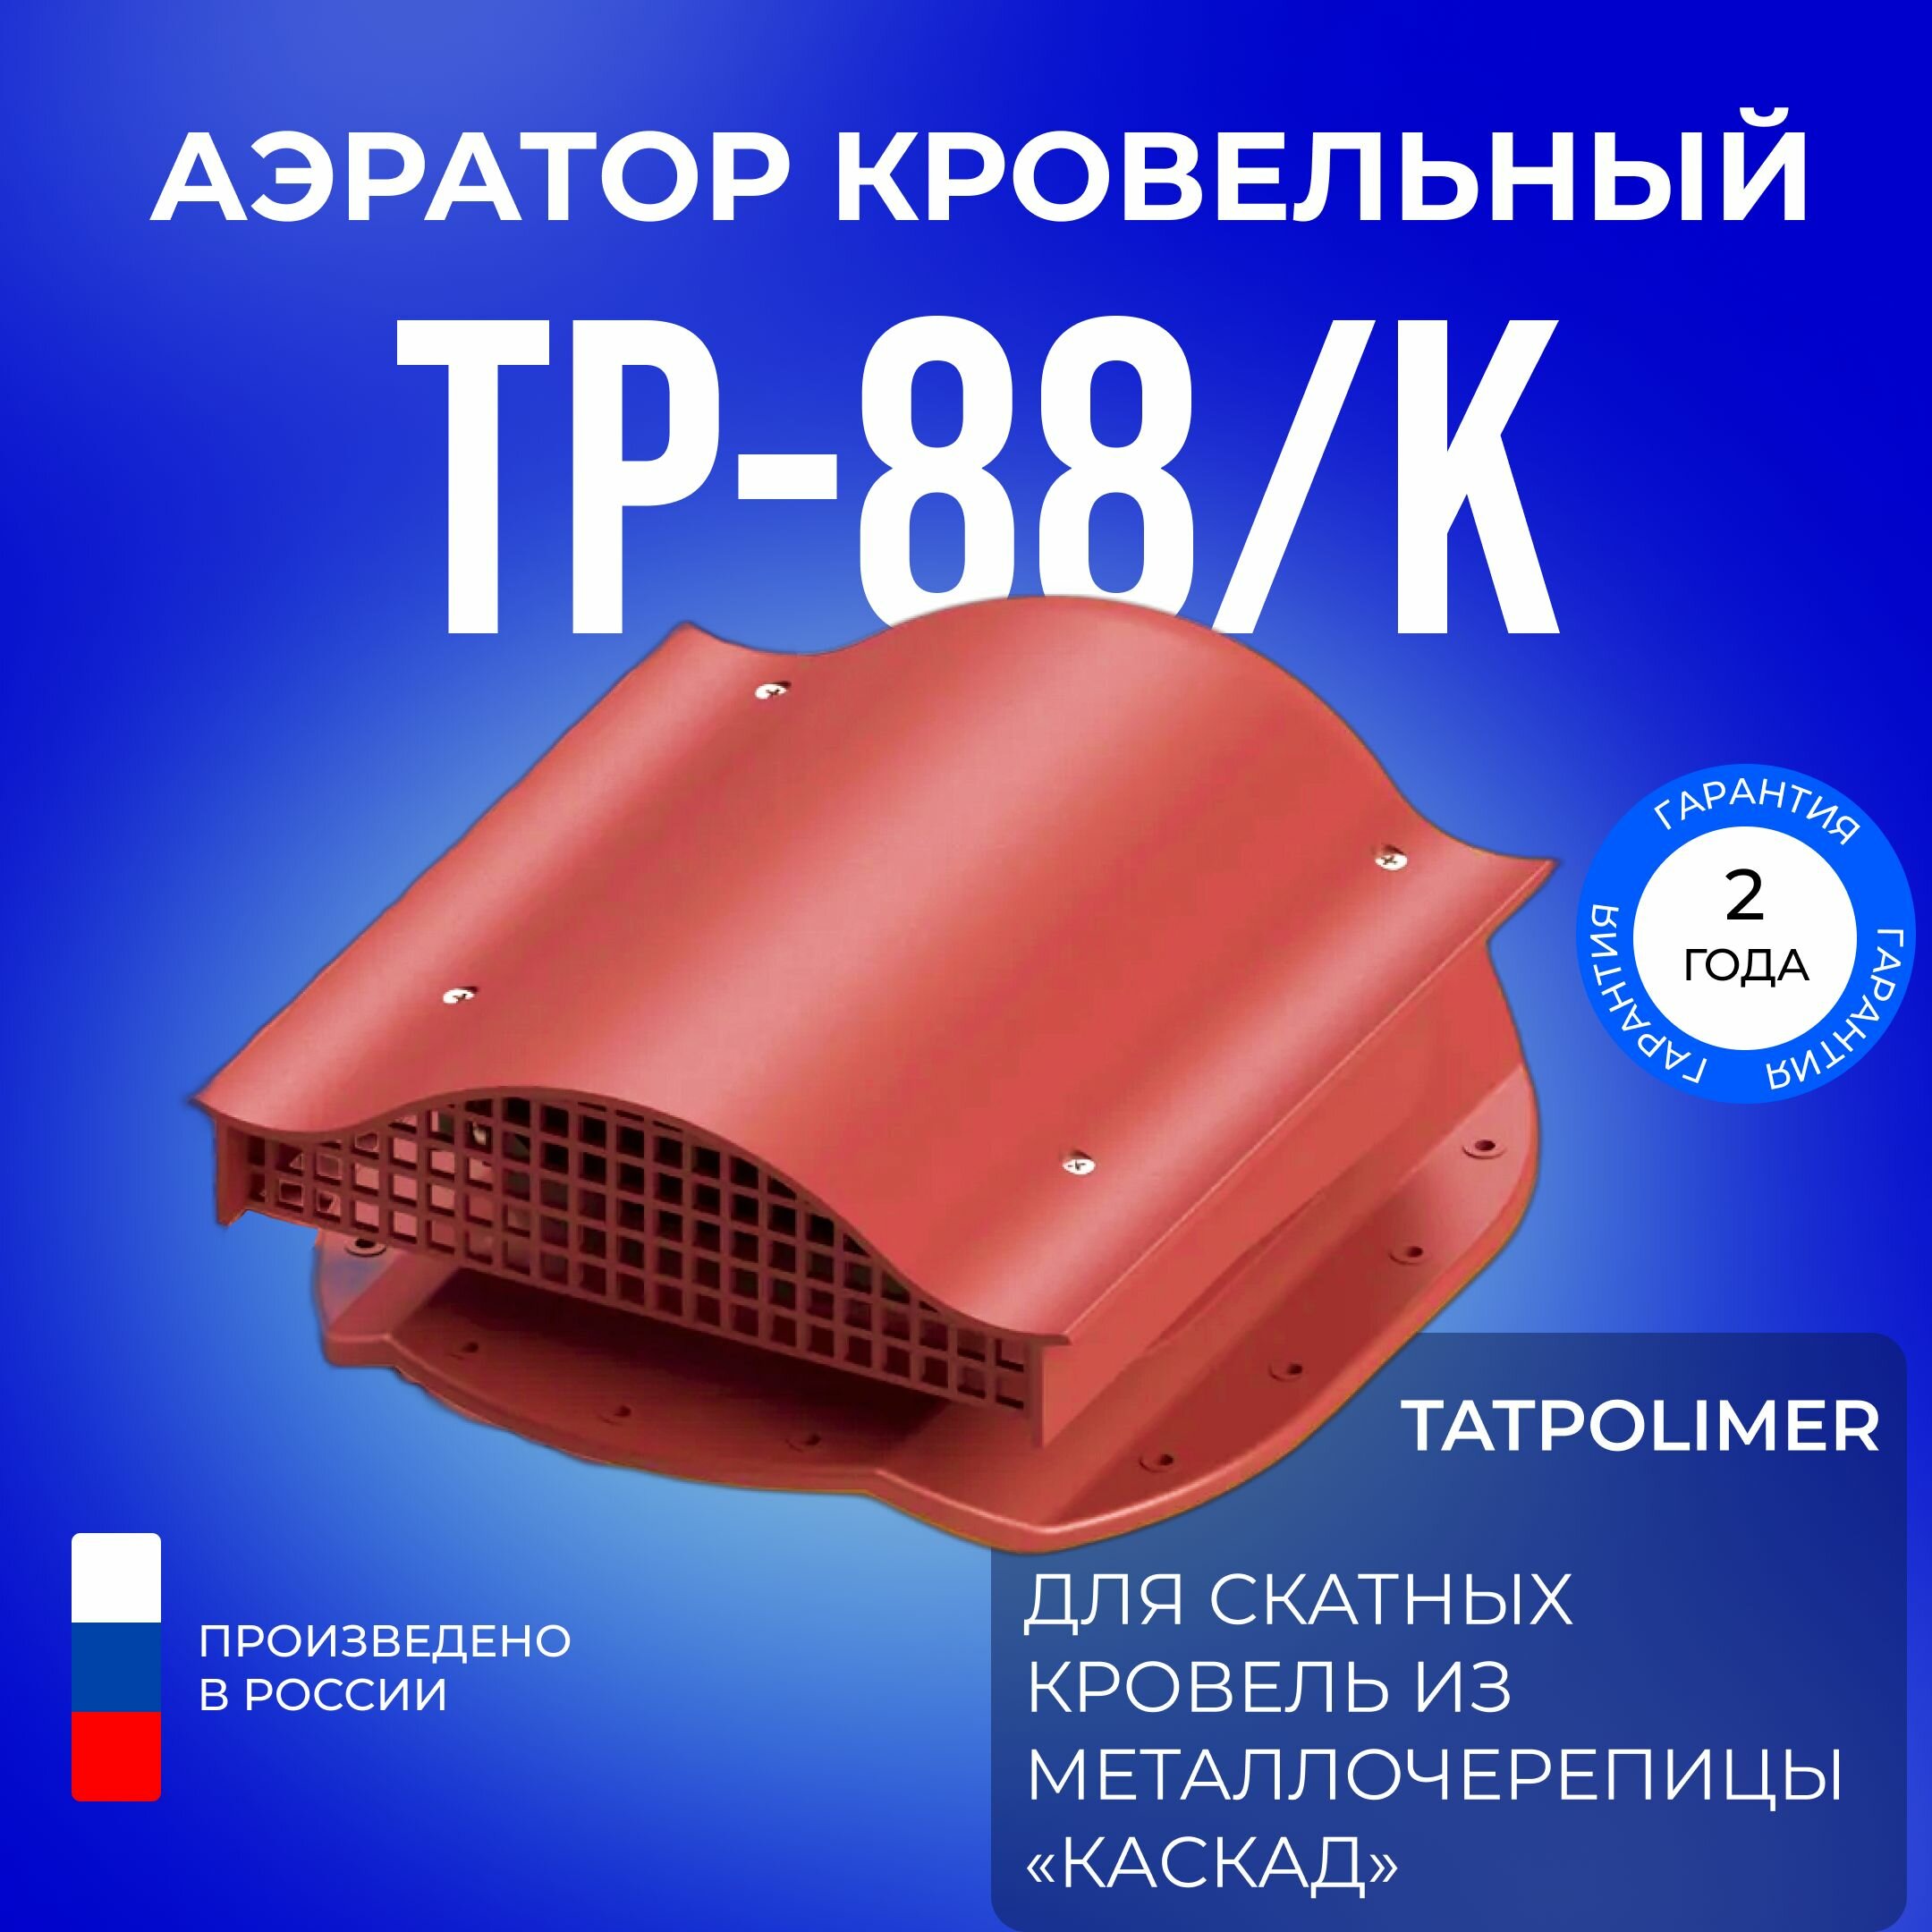 Аэратор кровельный TP-88/K зеленый